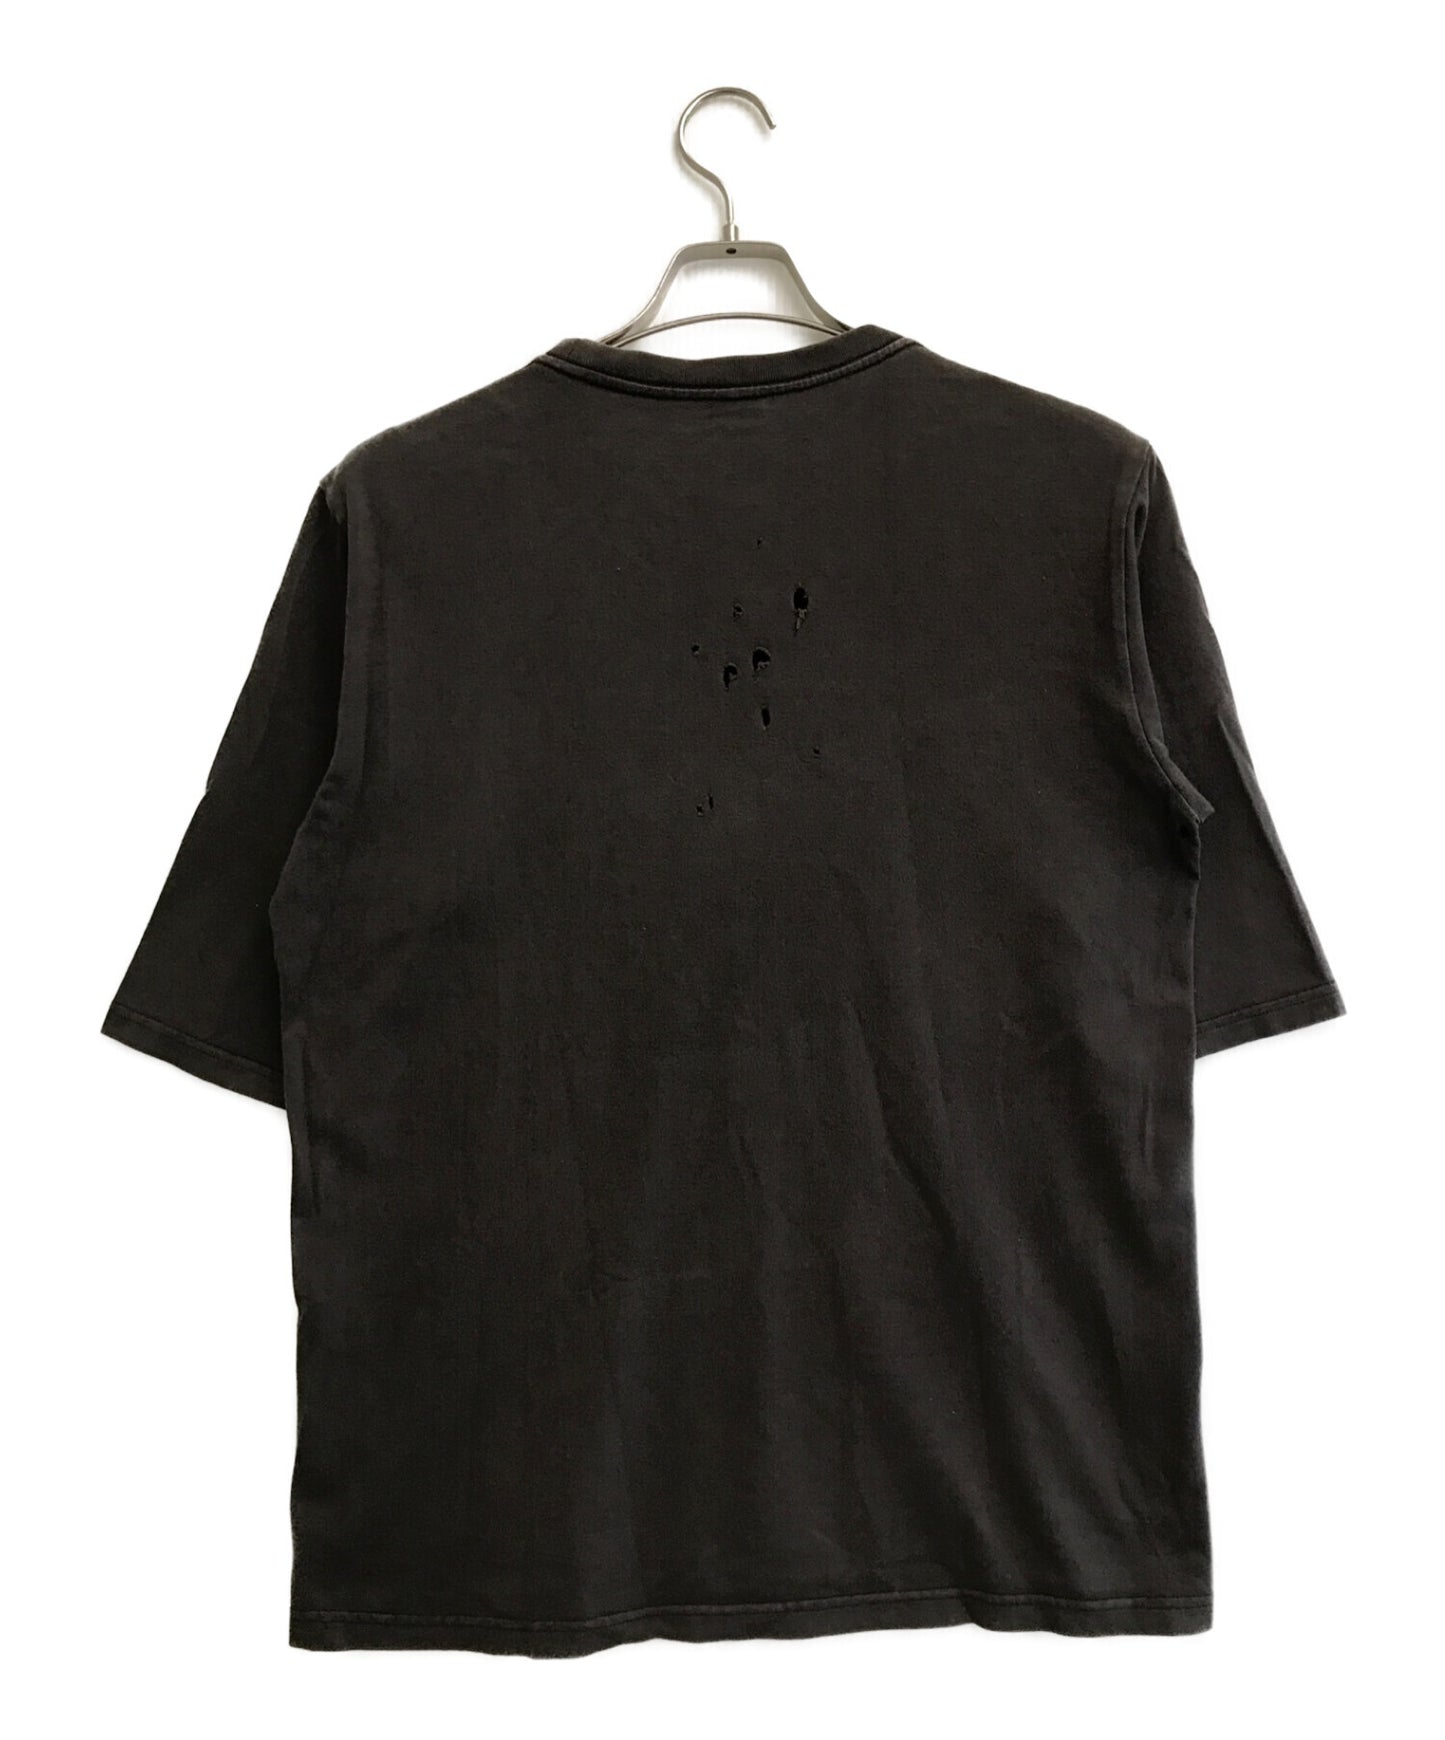 숫자 (N) INE 두개골 프린트 티셔츠 / 인쇄 티셔츠 / 손상된 티셔츠 / 탑 / 티셔츠